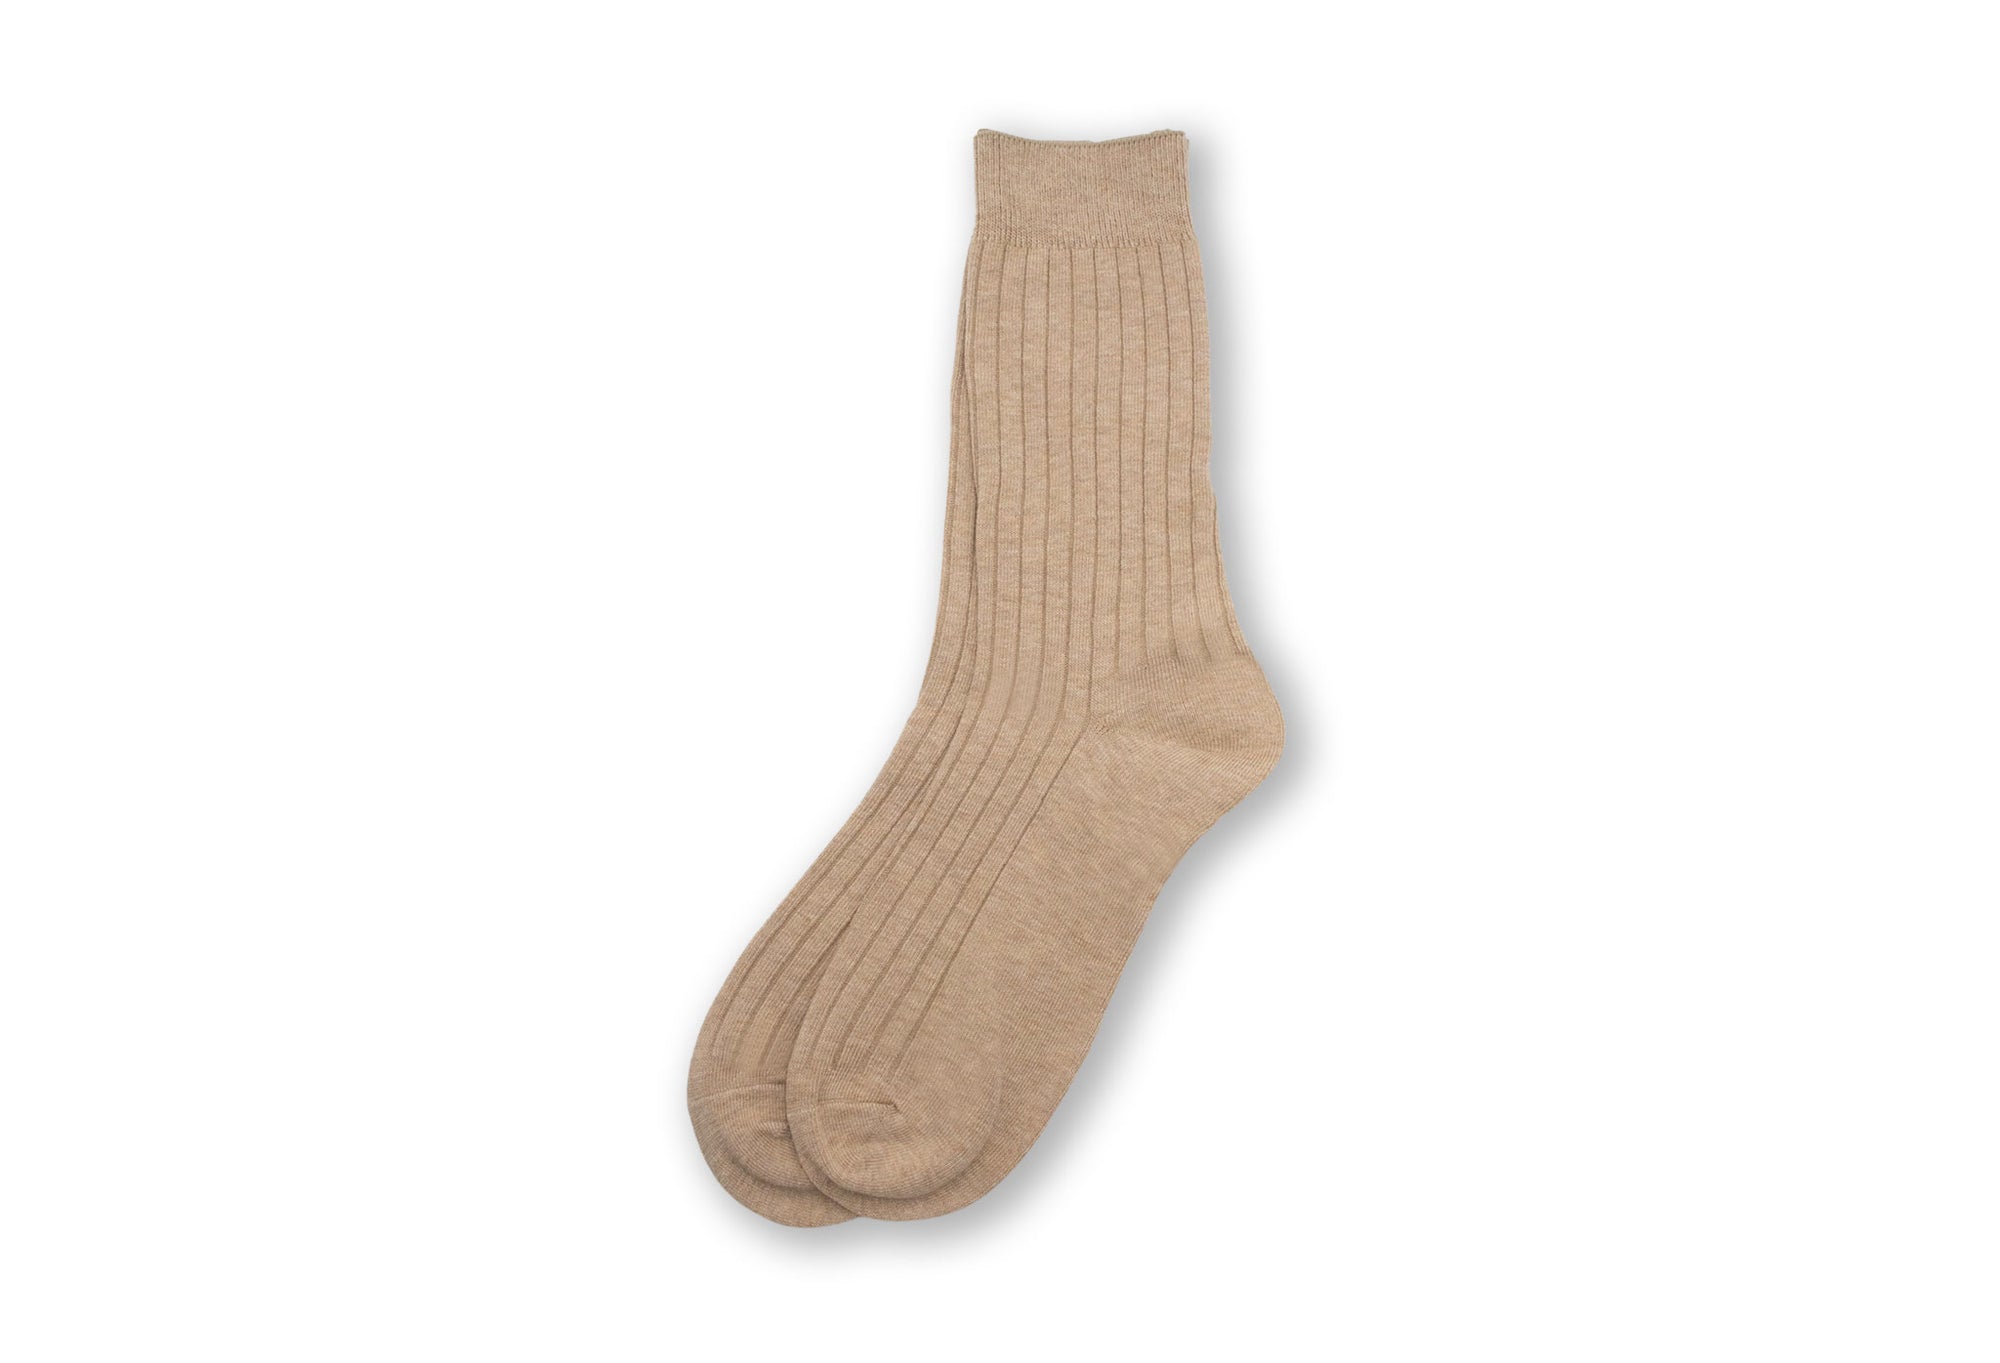 Aires Premium Cotton Anti-Bacterial Socks - Tan